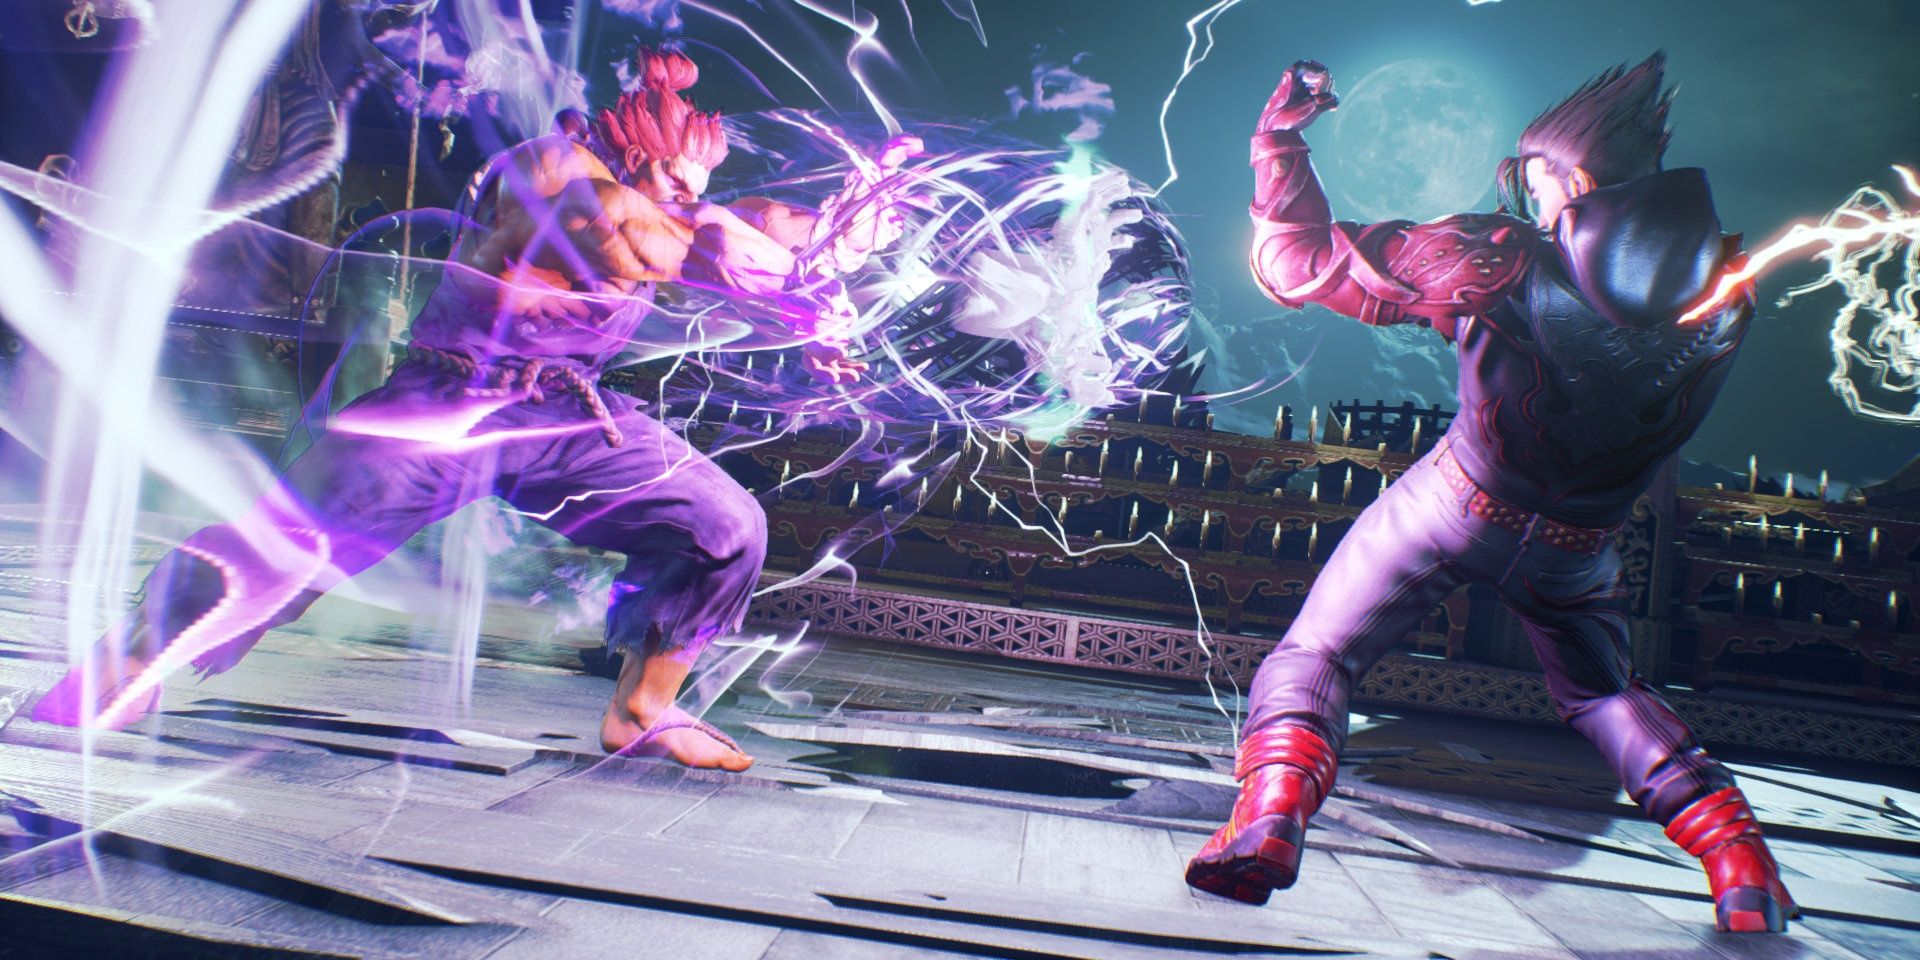 An electrifying fight in Tekken 7